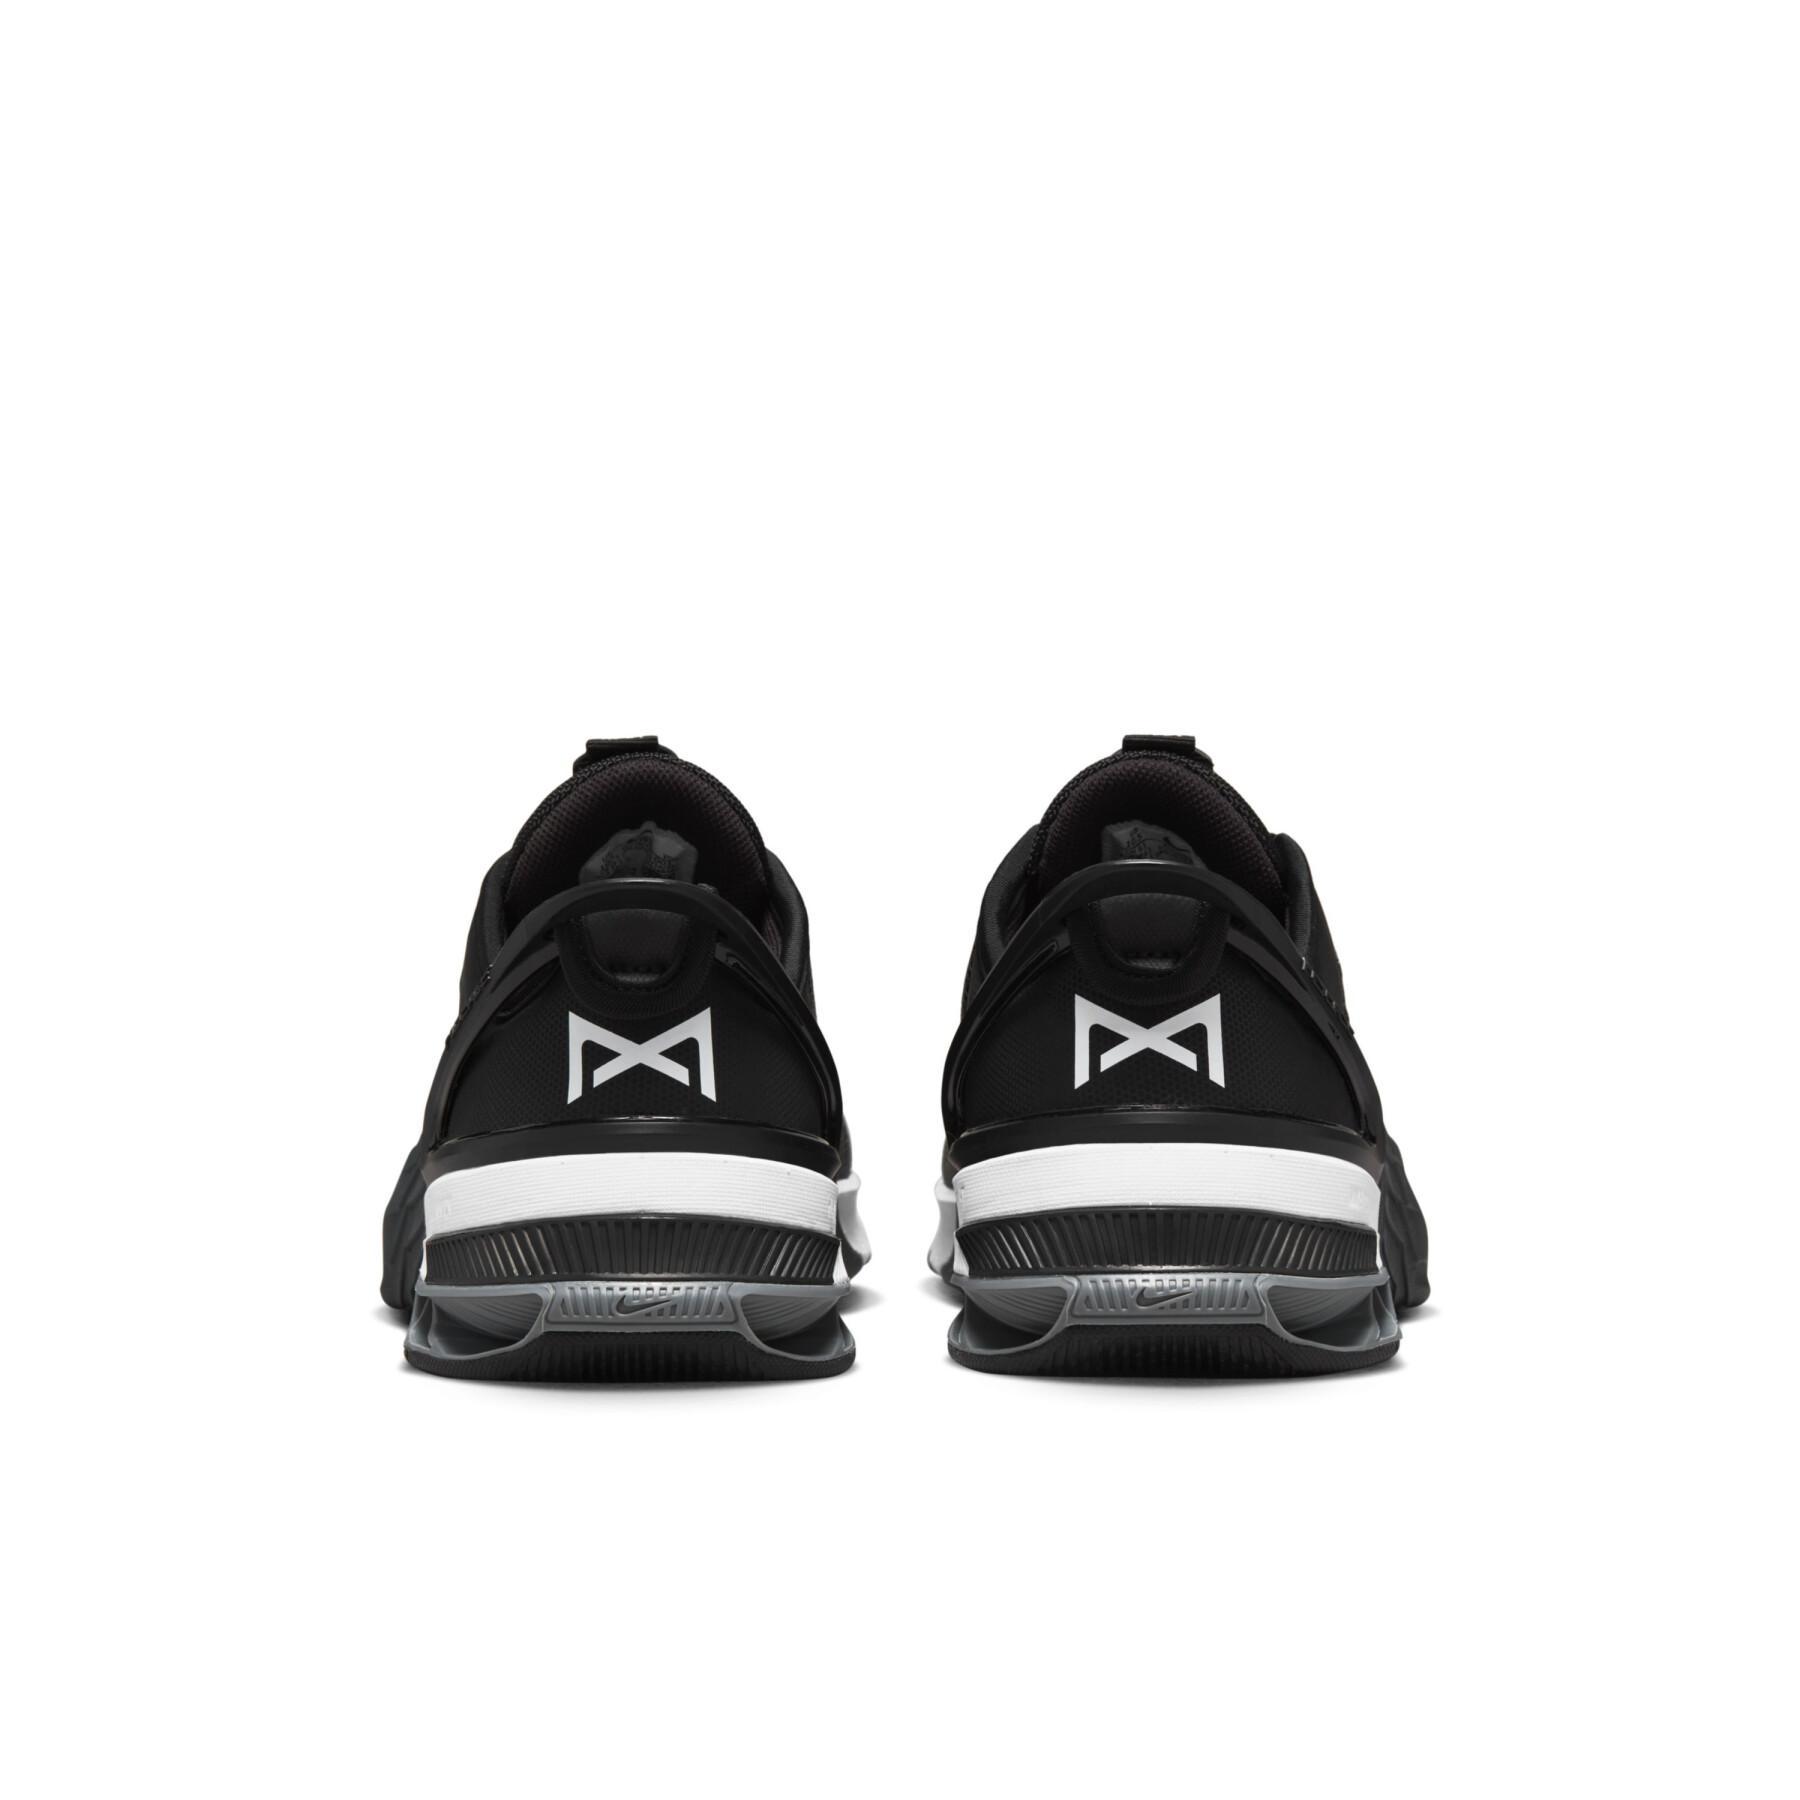 Zapatillas de cross training Nike Metcon 8 FlyEase